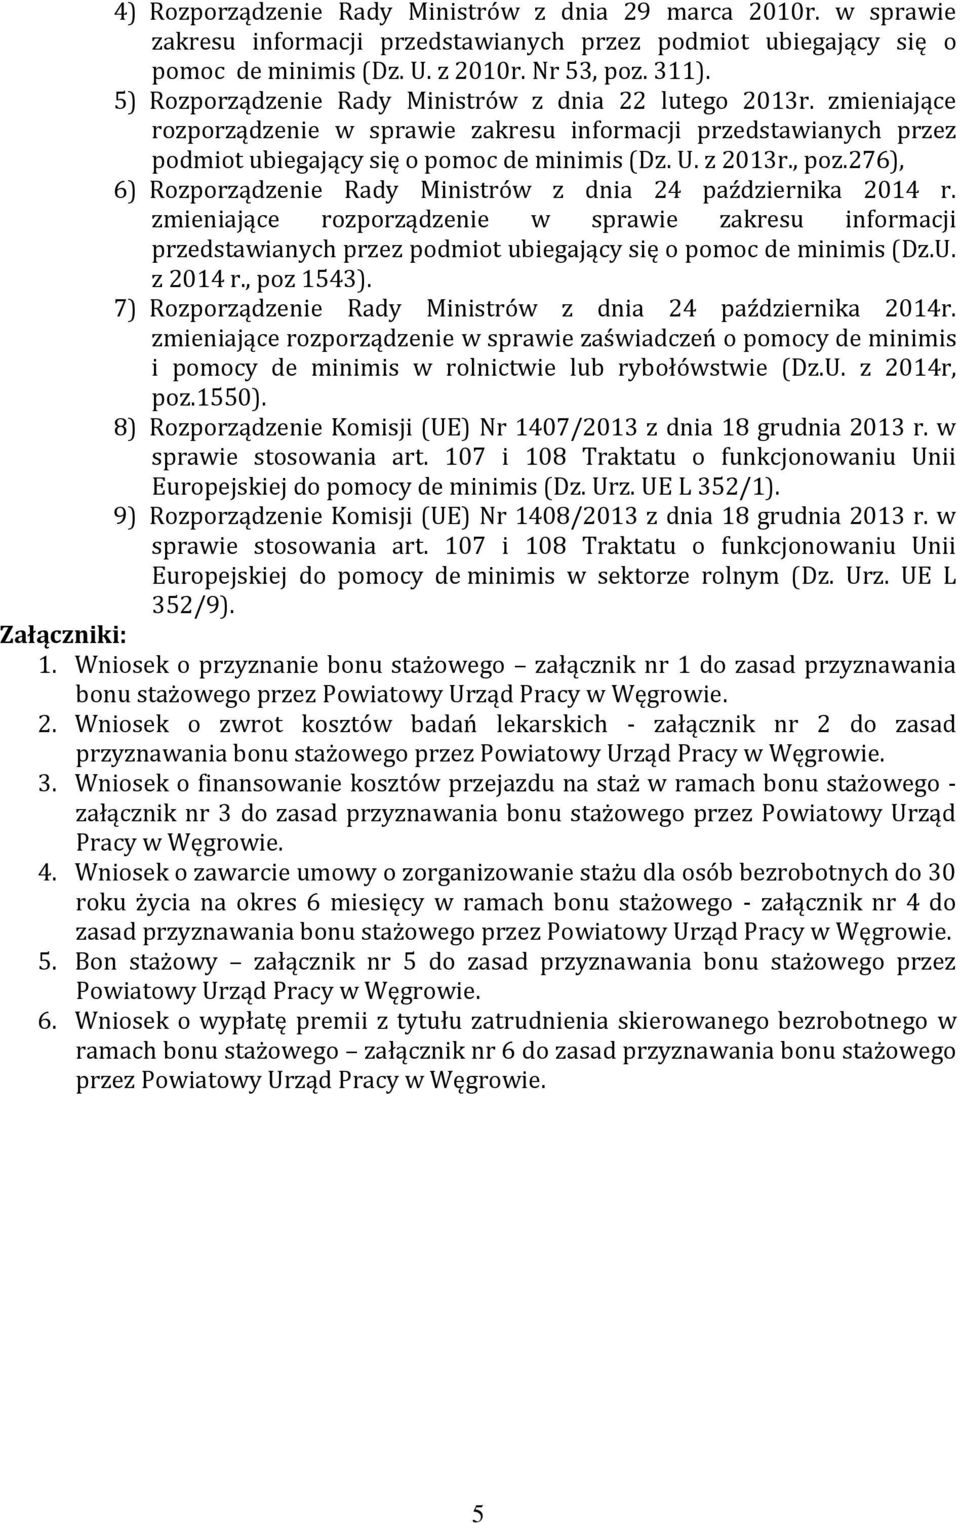 276), 6) Rozporządzenie Rady Ministrów z dnia 24 października 2014 r. zmieniające rozporządzenie w sprawie zakresu informacji przedstawianych przez podmiot ubiegający się o pomoc de minimis (Dz.U.